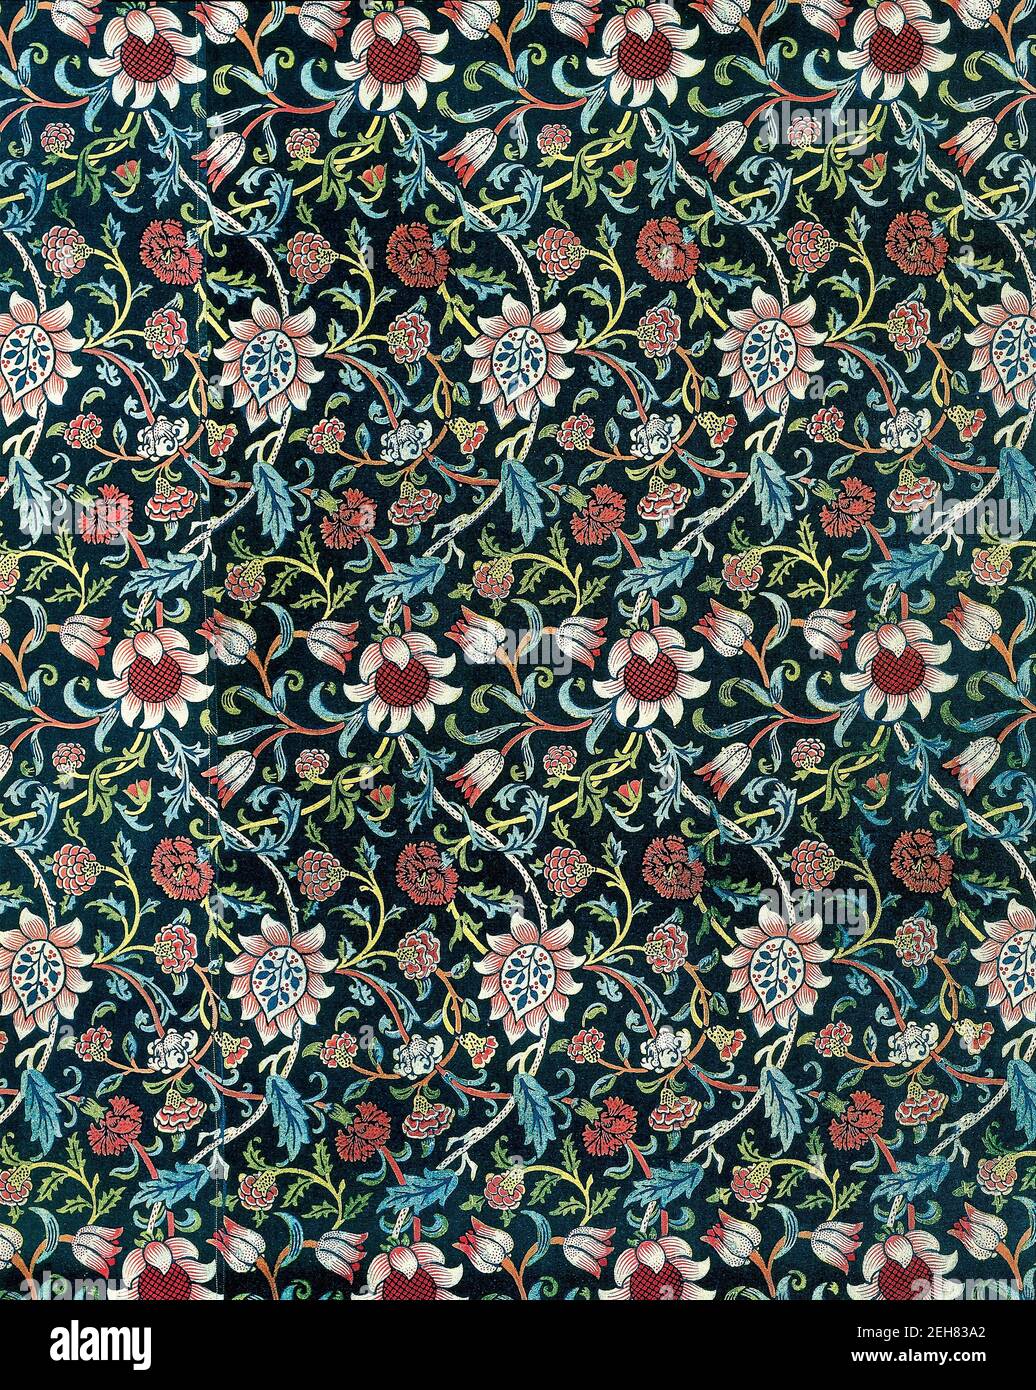 Conception textile 'Evenlode' par William Morris (1834-1896) Banque D'Images